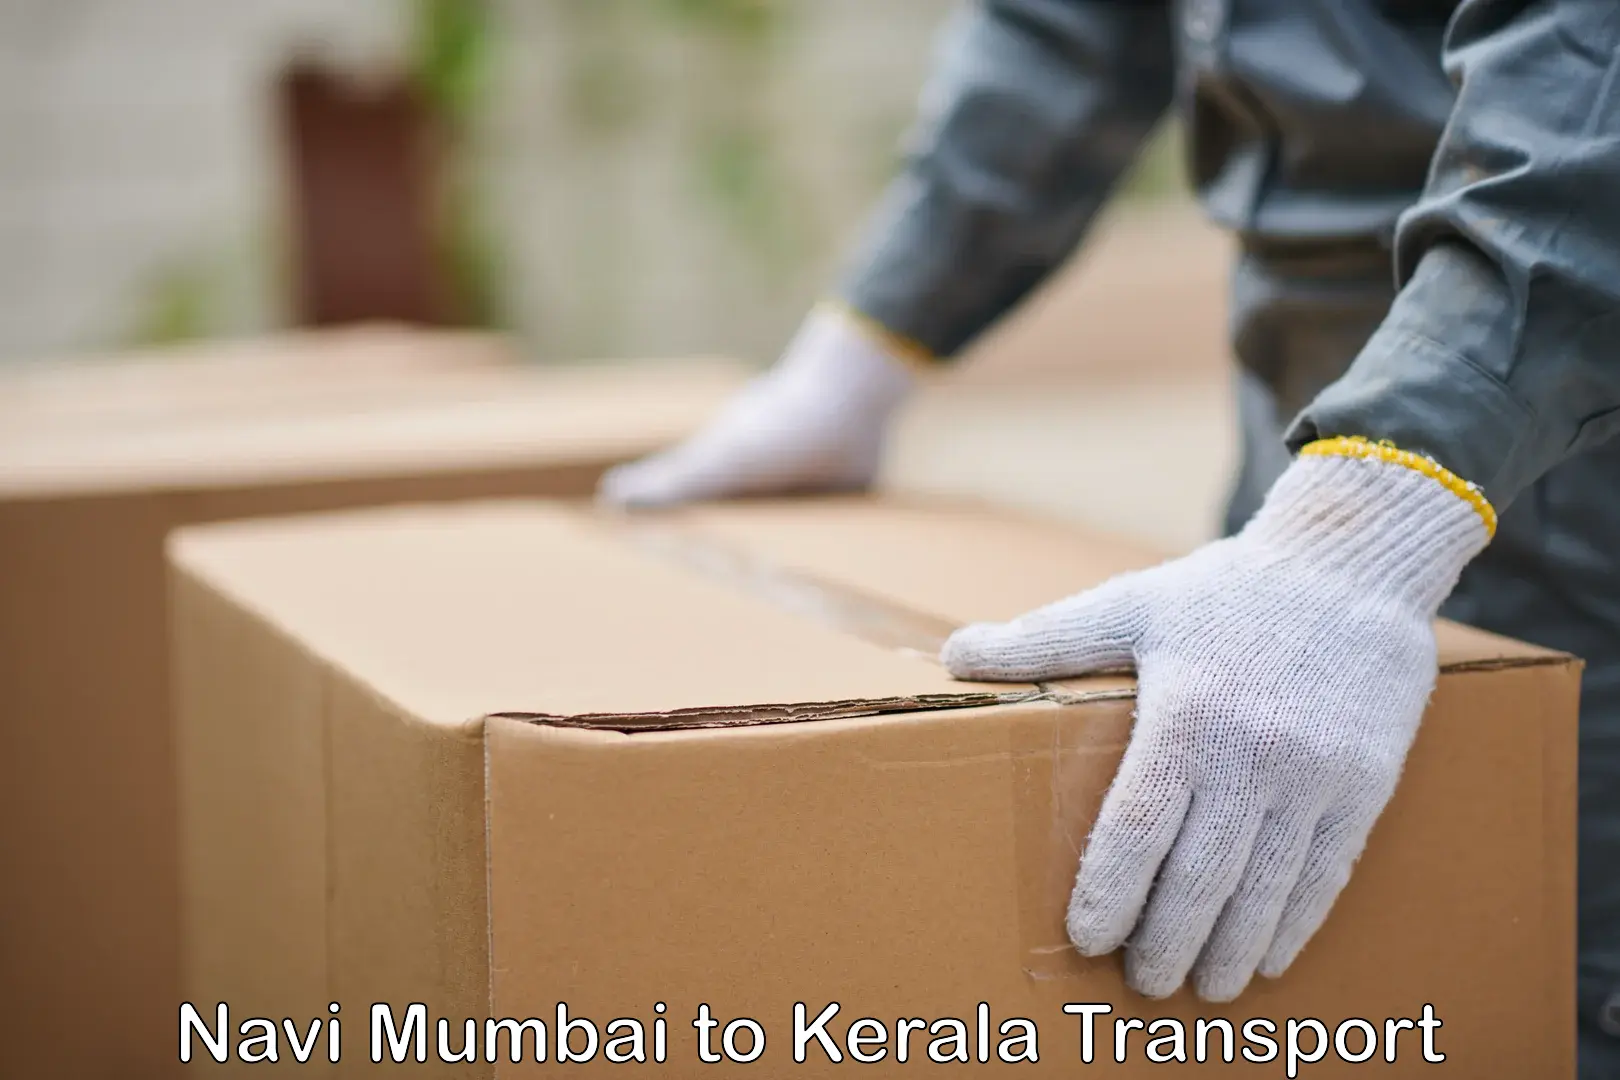 Delivery service Navi Mumbai to Kerala